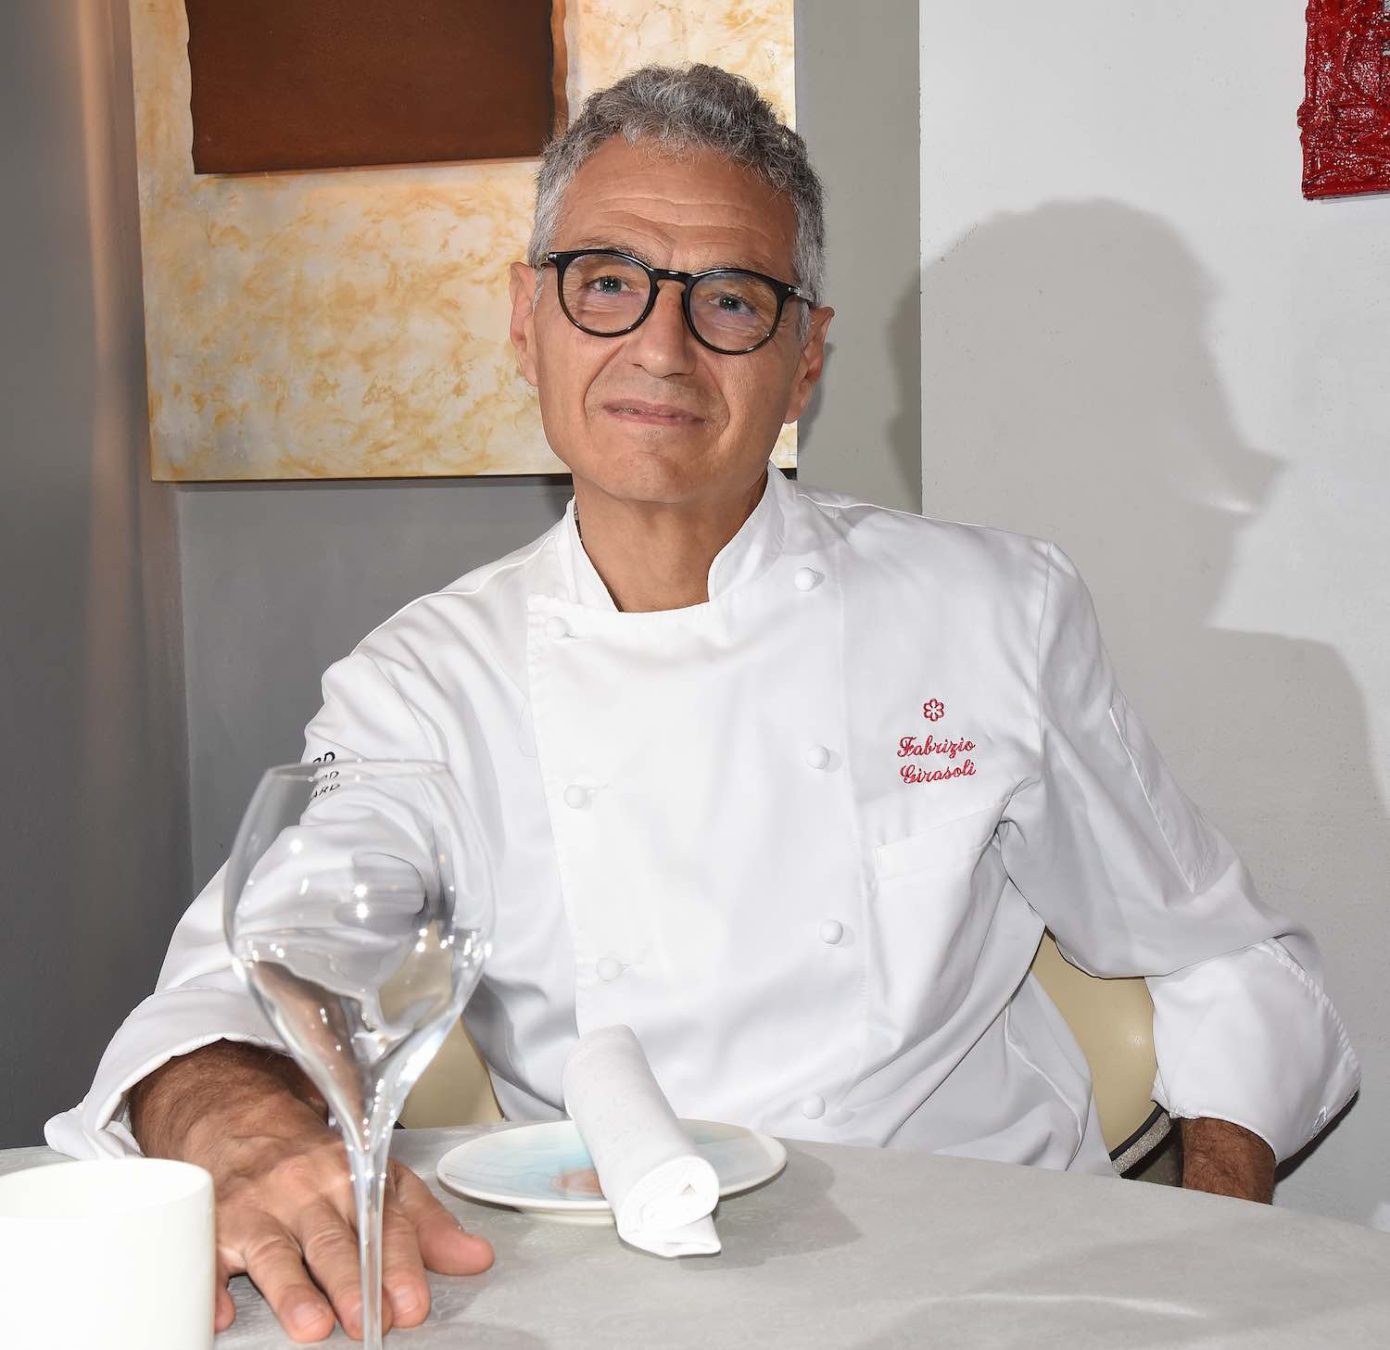 Intervista a Fabrizio Girasoli, chef del Butterfly, che da anni presente nella lista dei ristoranti stellati in Toscana con 1 stella Michelin